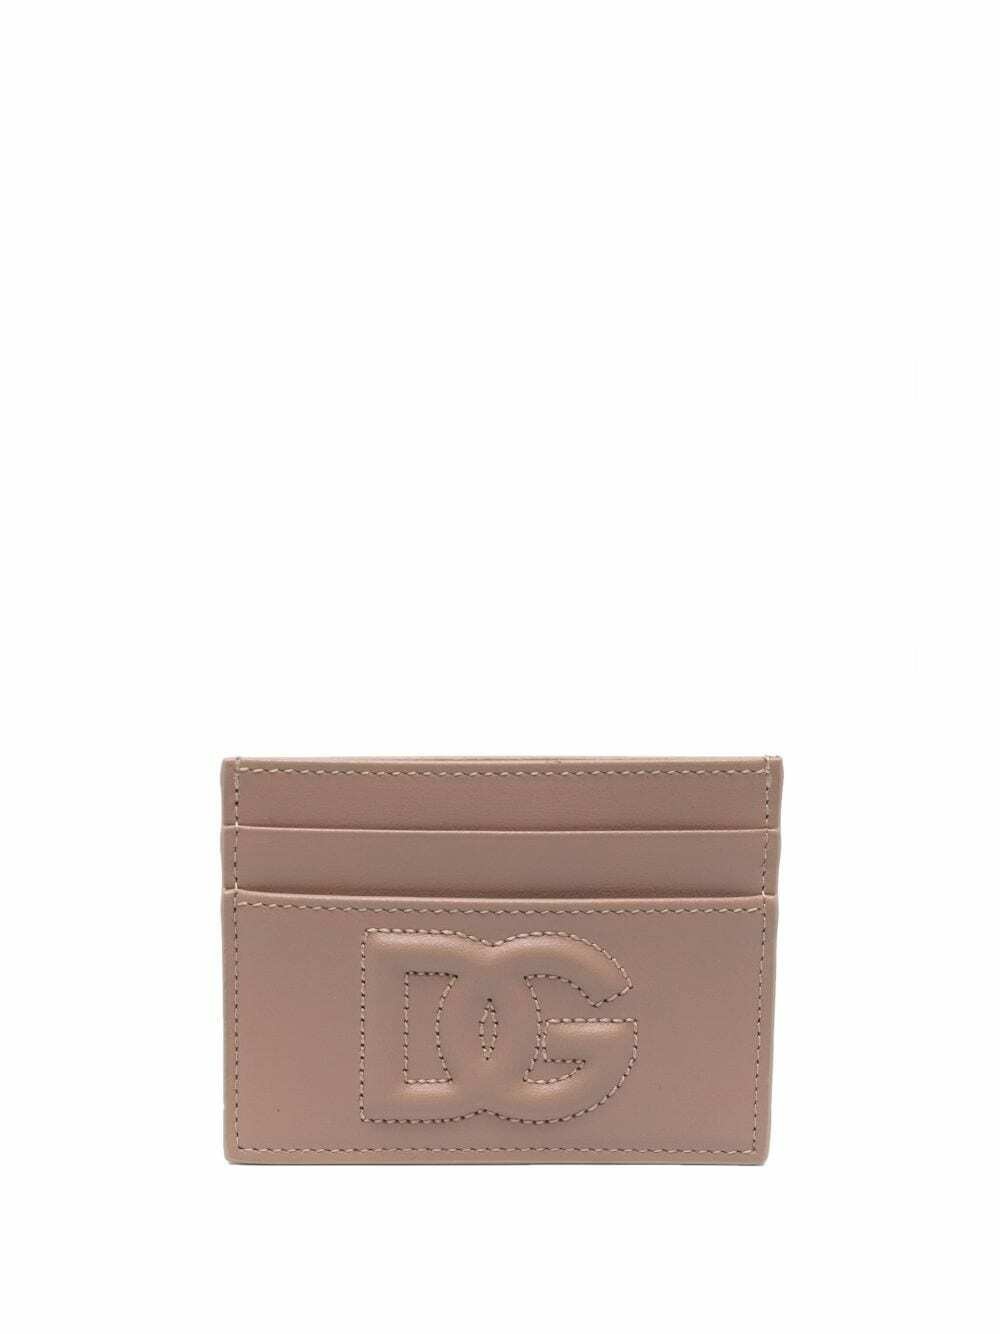 DOLCE & GABBANA - Leather Credit Card Case Dolce & Gabbana